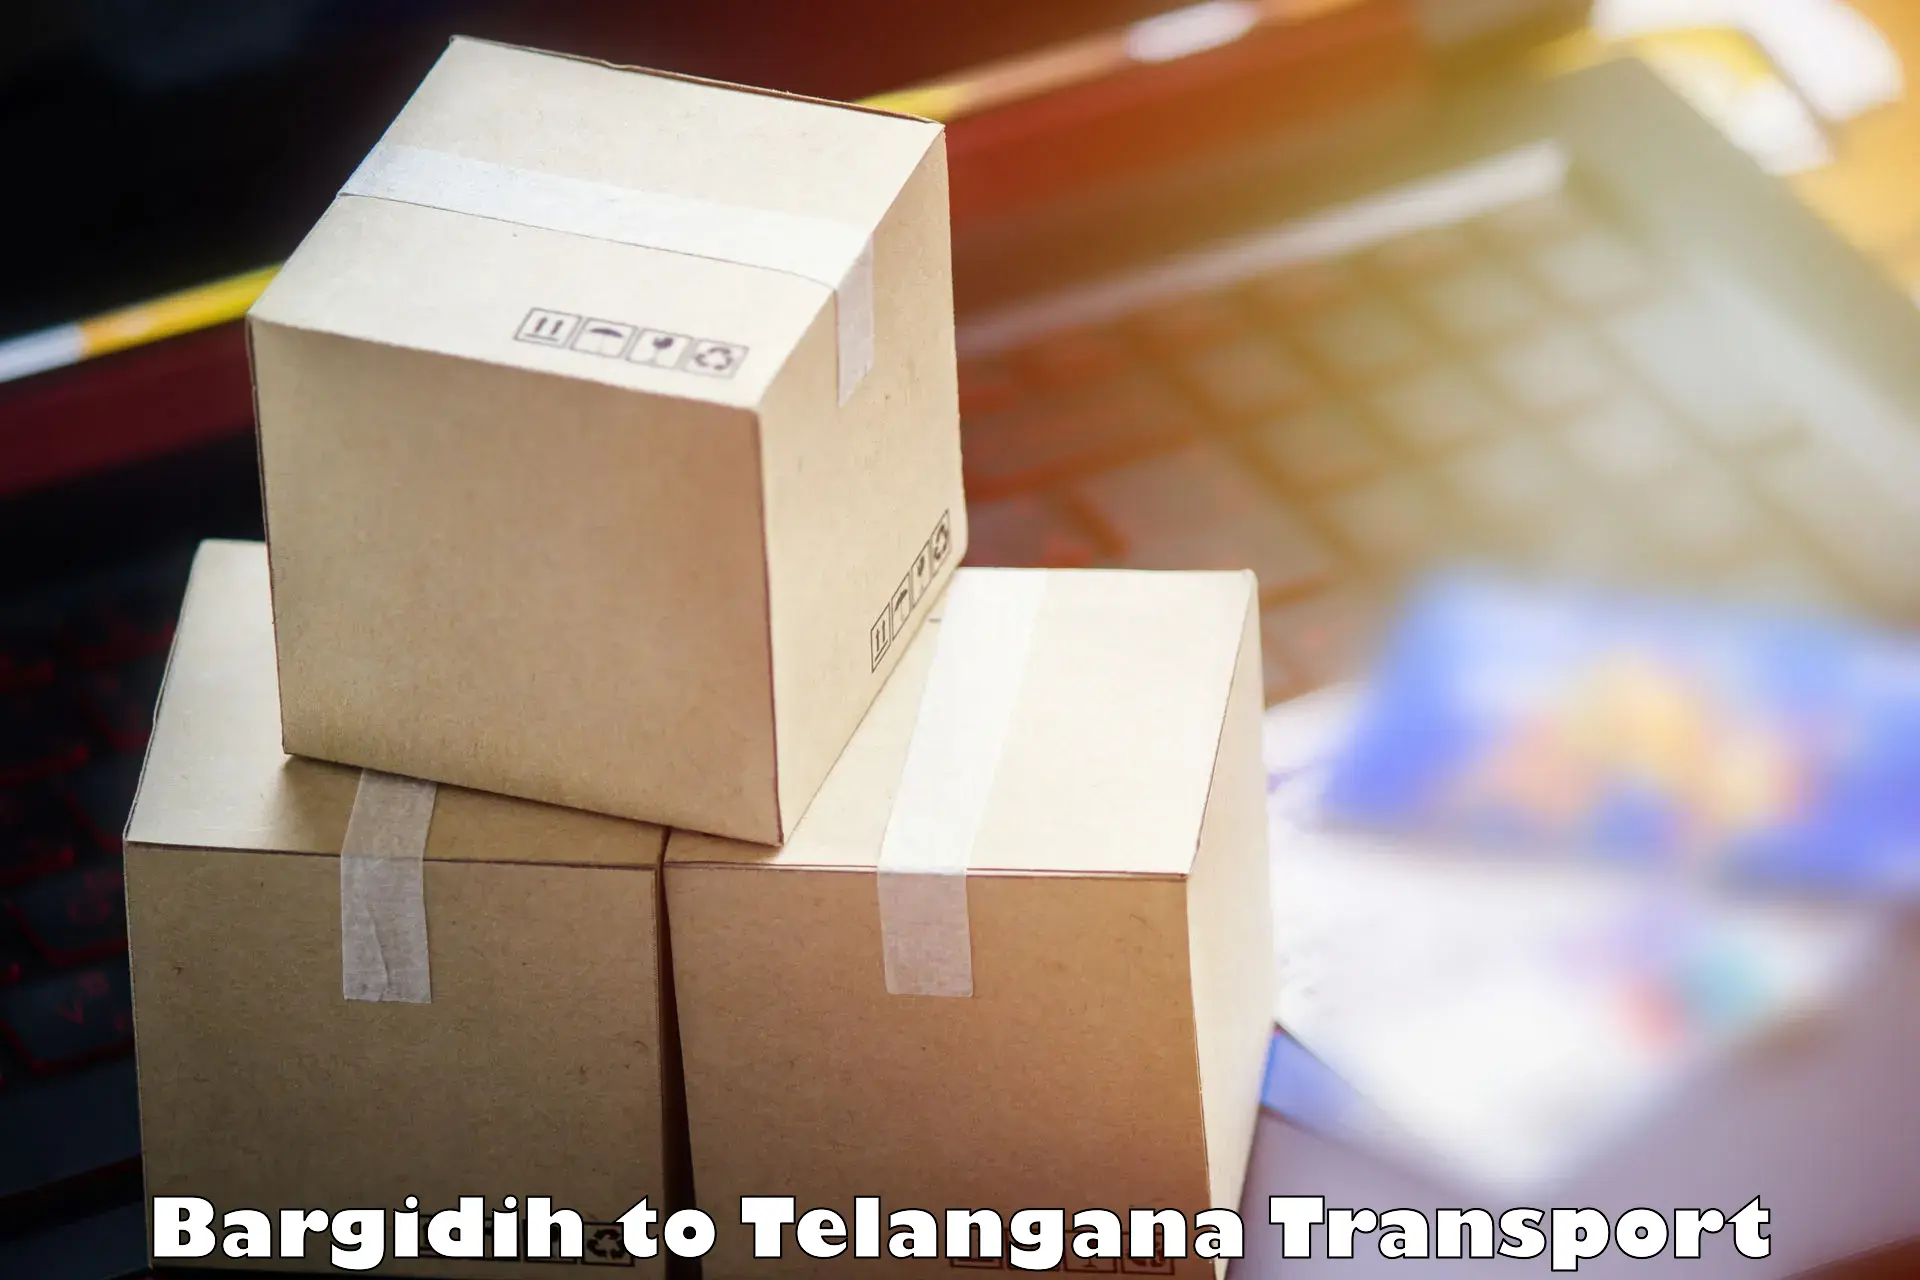 Daily parcel service transport Bargidih to Kothagudem